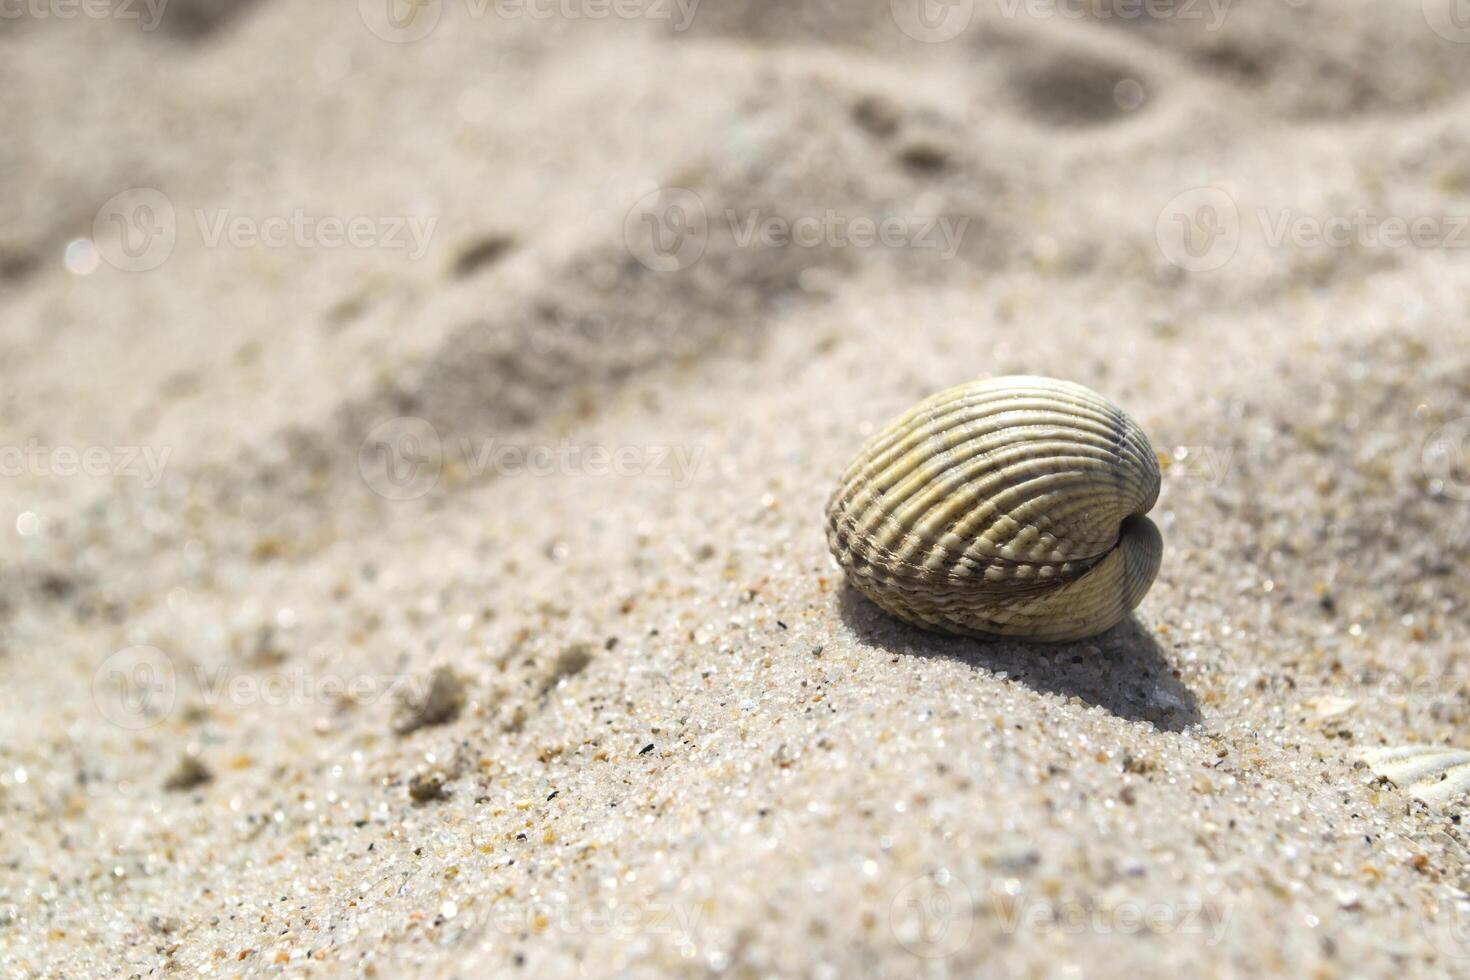 mooi zeeschelp Aan de zand van de strand. weekdier schelp. dichtbij omhoog. foto